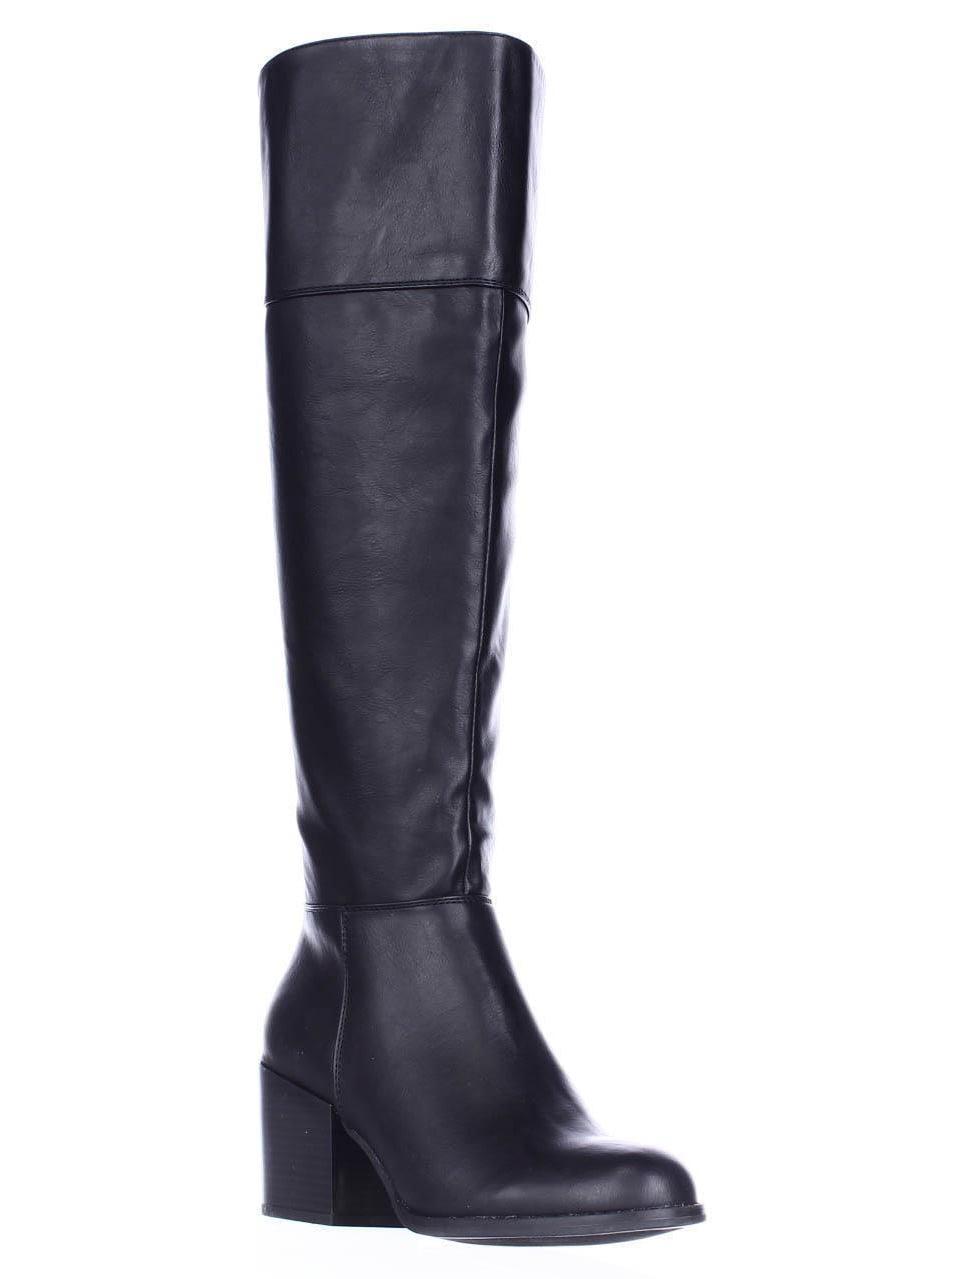 Womens madden girl Wendiee Knee High Boots, Black - Walmart.com